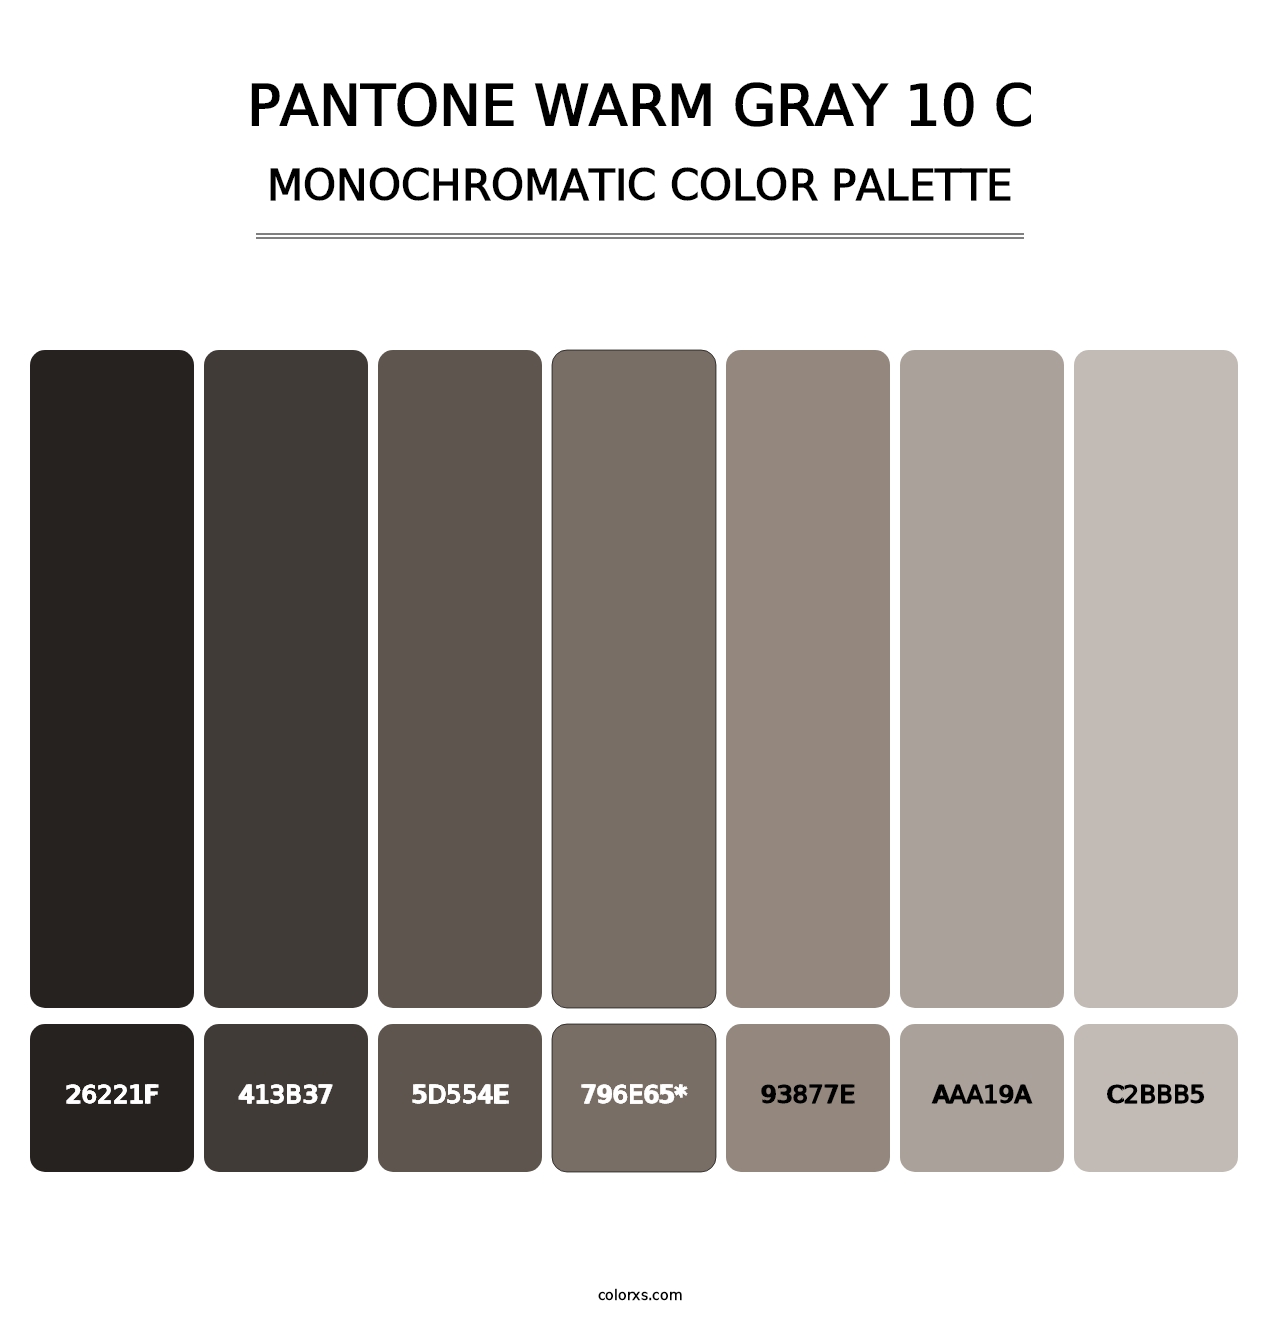 PANTONE Warm Gray 10 C - Monochromatic Color Palette